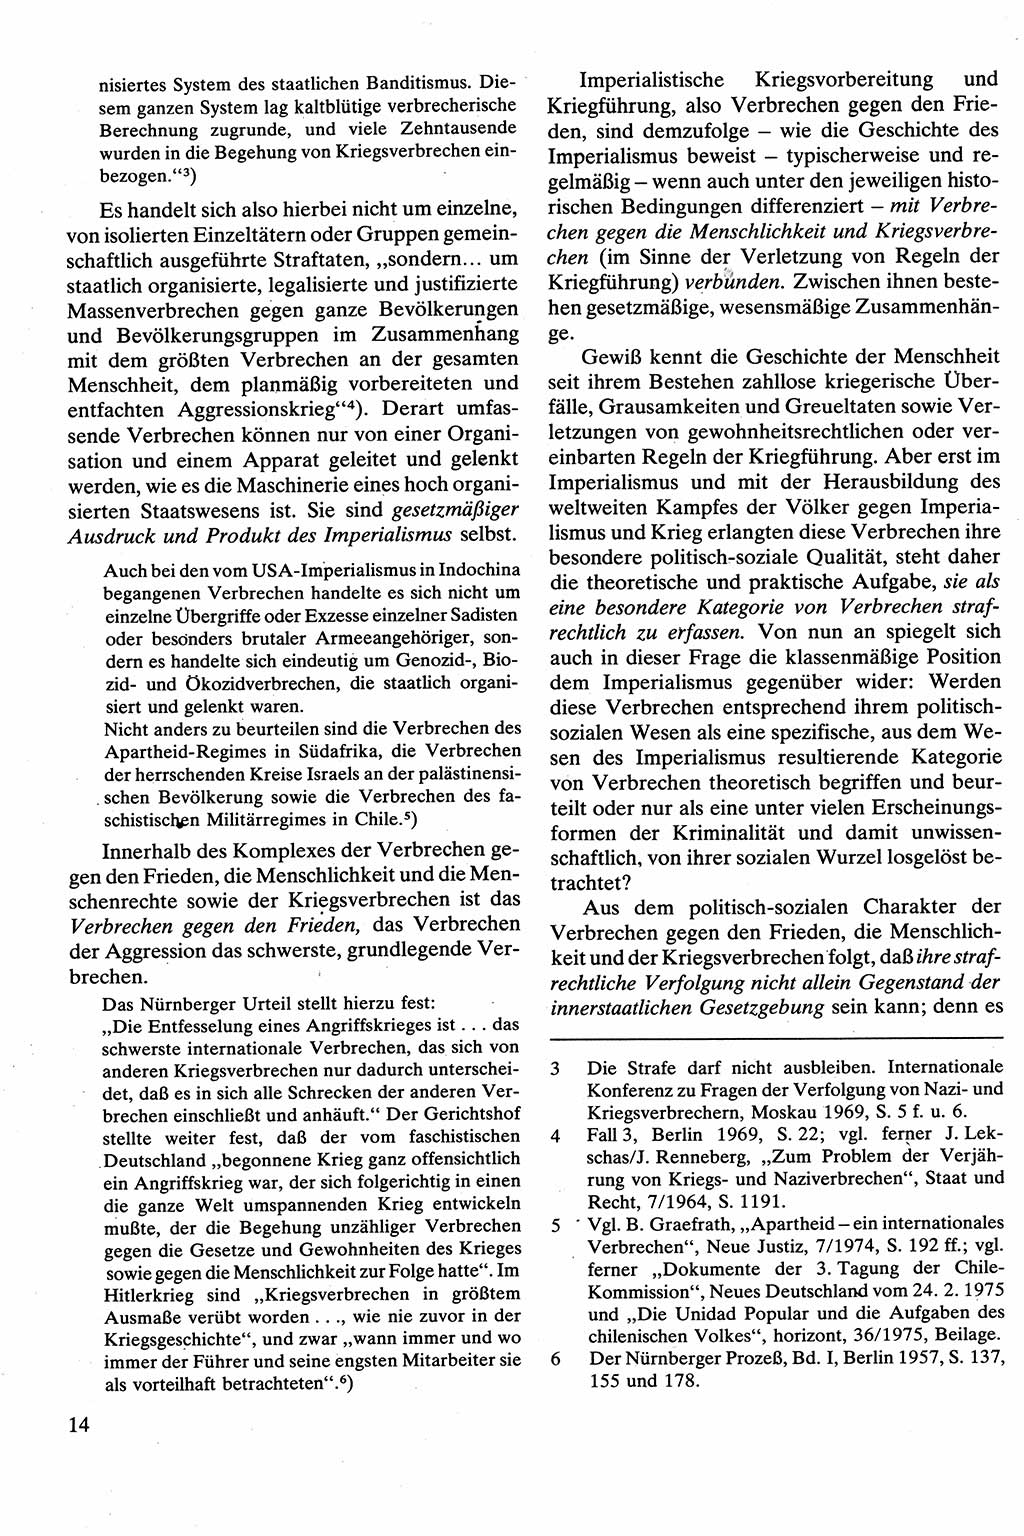 Strafrecht [Deutsche Demokratische Republik (DDR)], Besonderer Teil, Lehrbuch 1981, Seite 14 (Strafr. DDR BT Lb. 1981, S. 14)